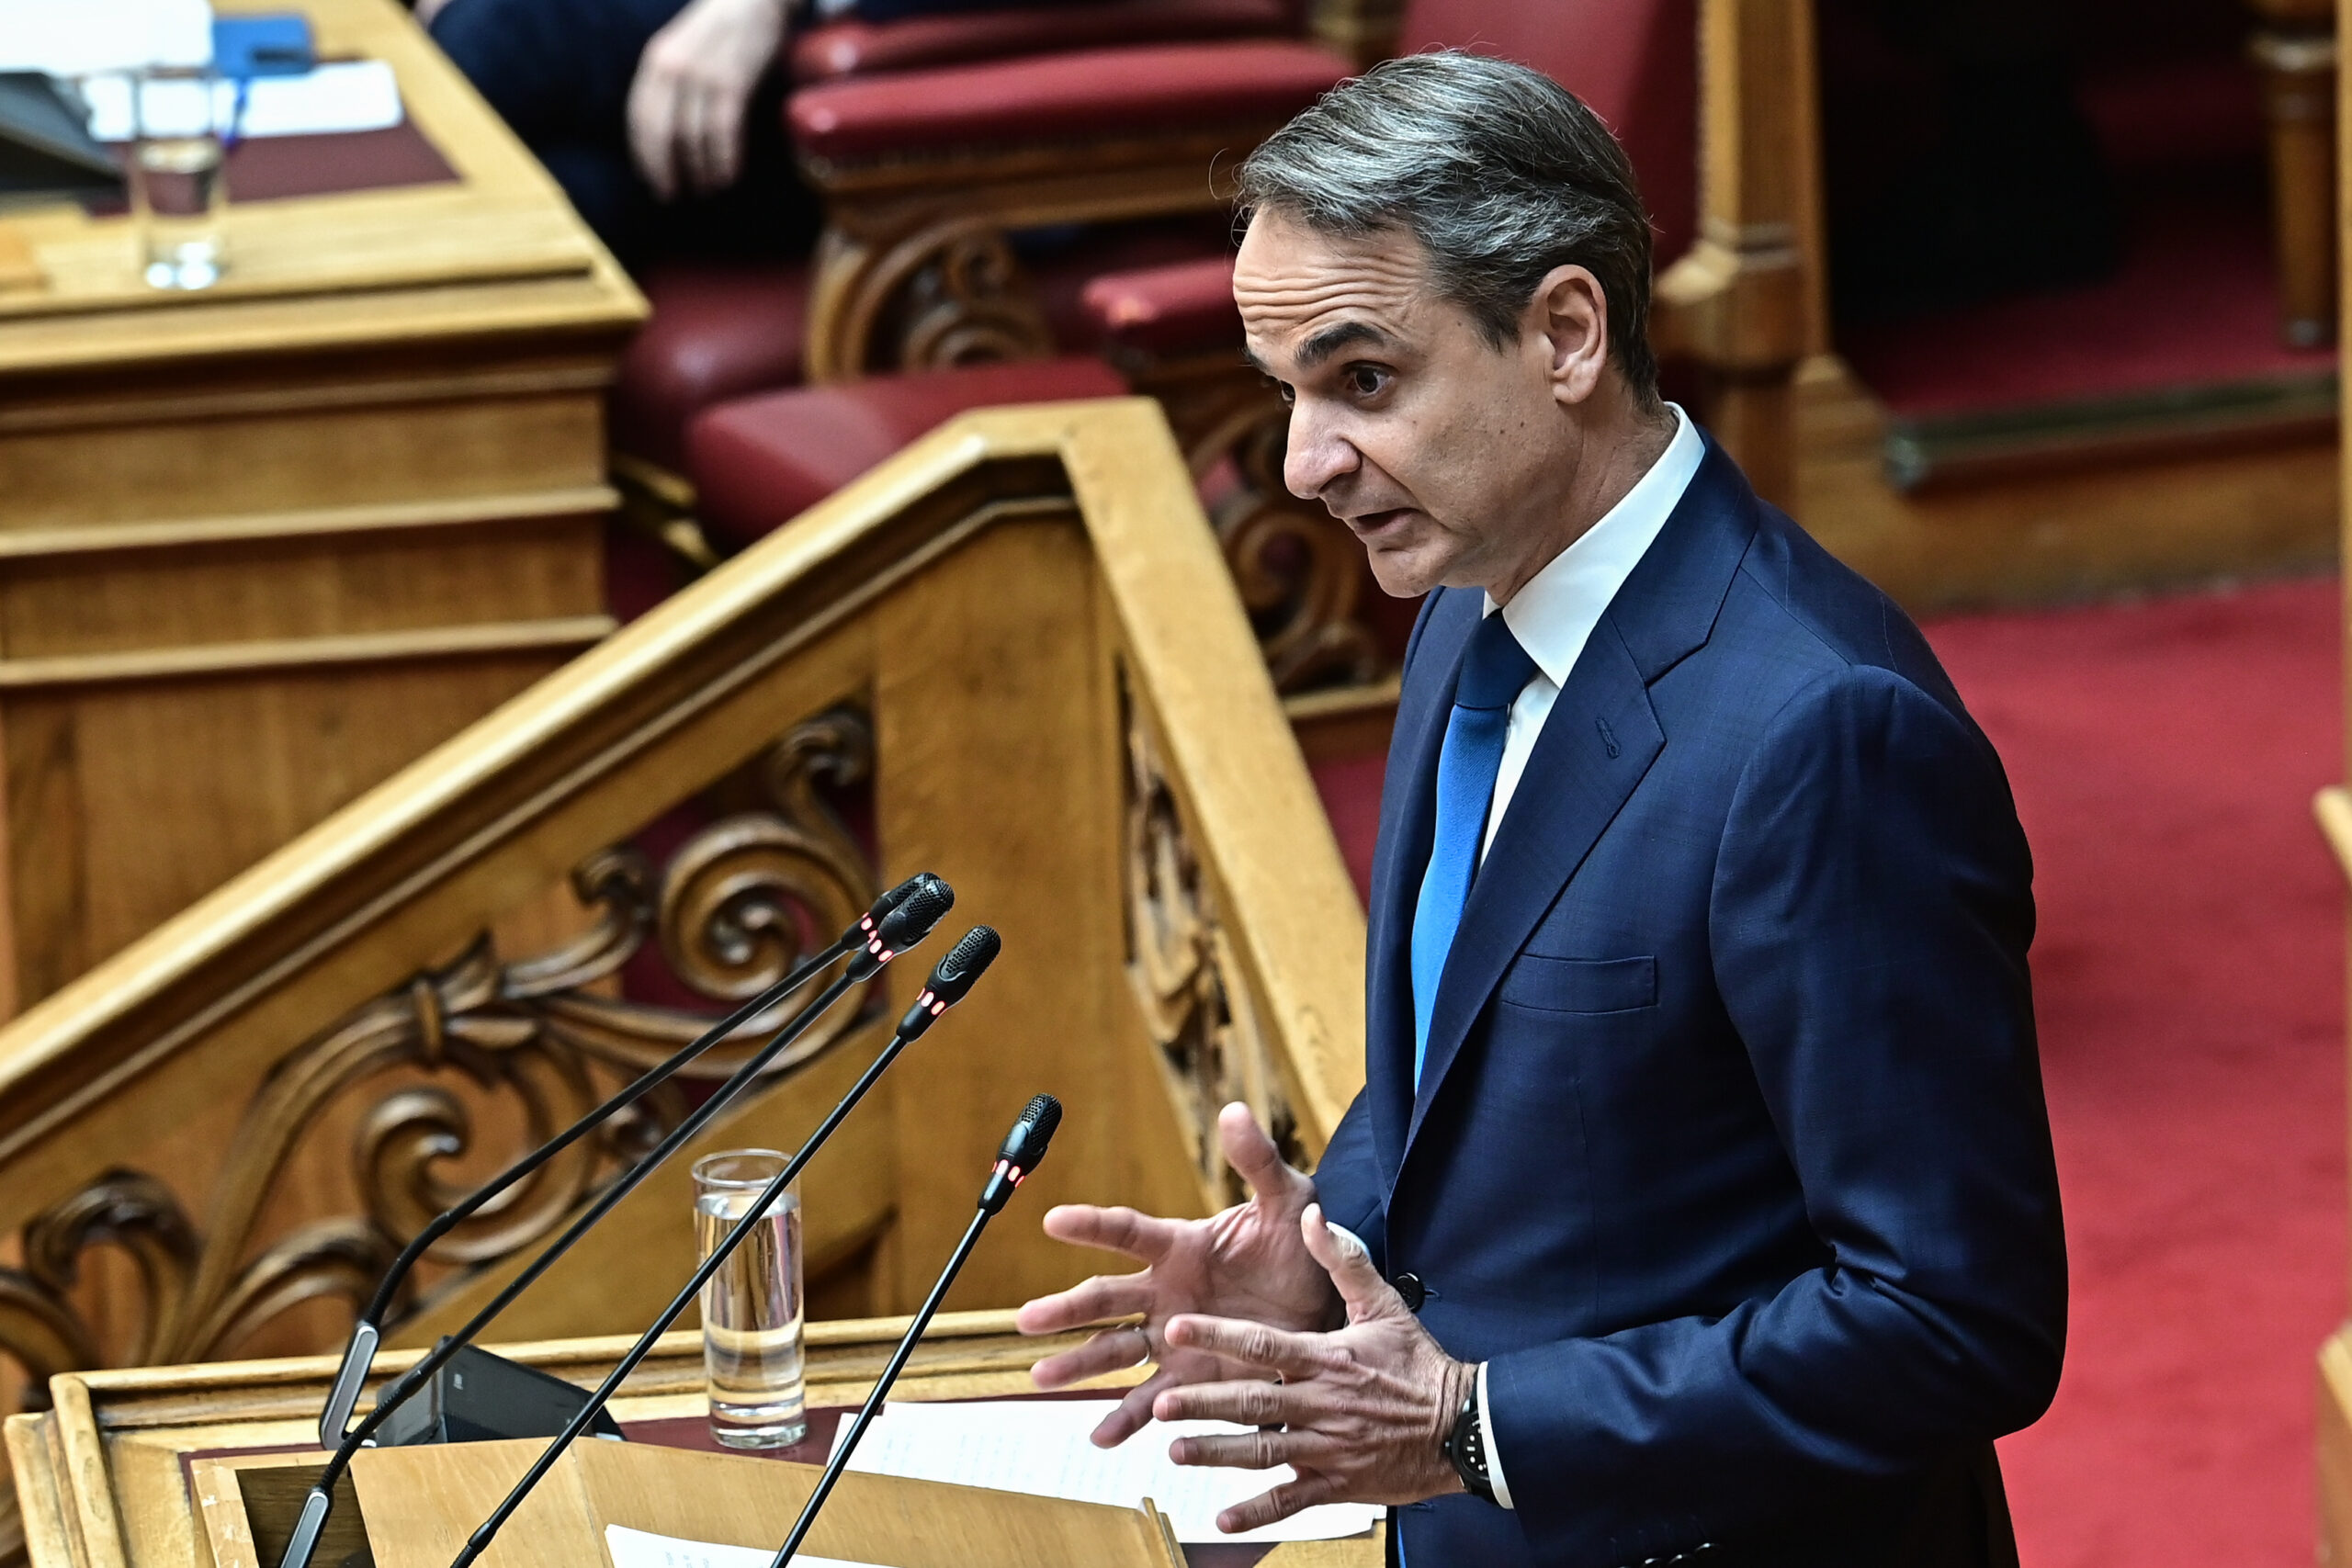 Ώρα του Πρωθυπουργού: Σε επίκαιρη ερώτηση του Ν. Ανδρουλάκη για τη στεγαστική κρίση απαντάει στη Βουλή ο Κ. Μητσοτάκης